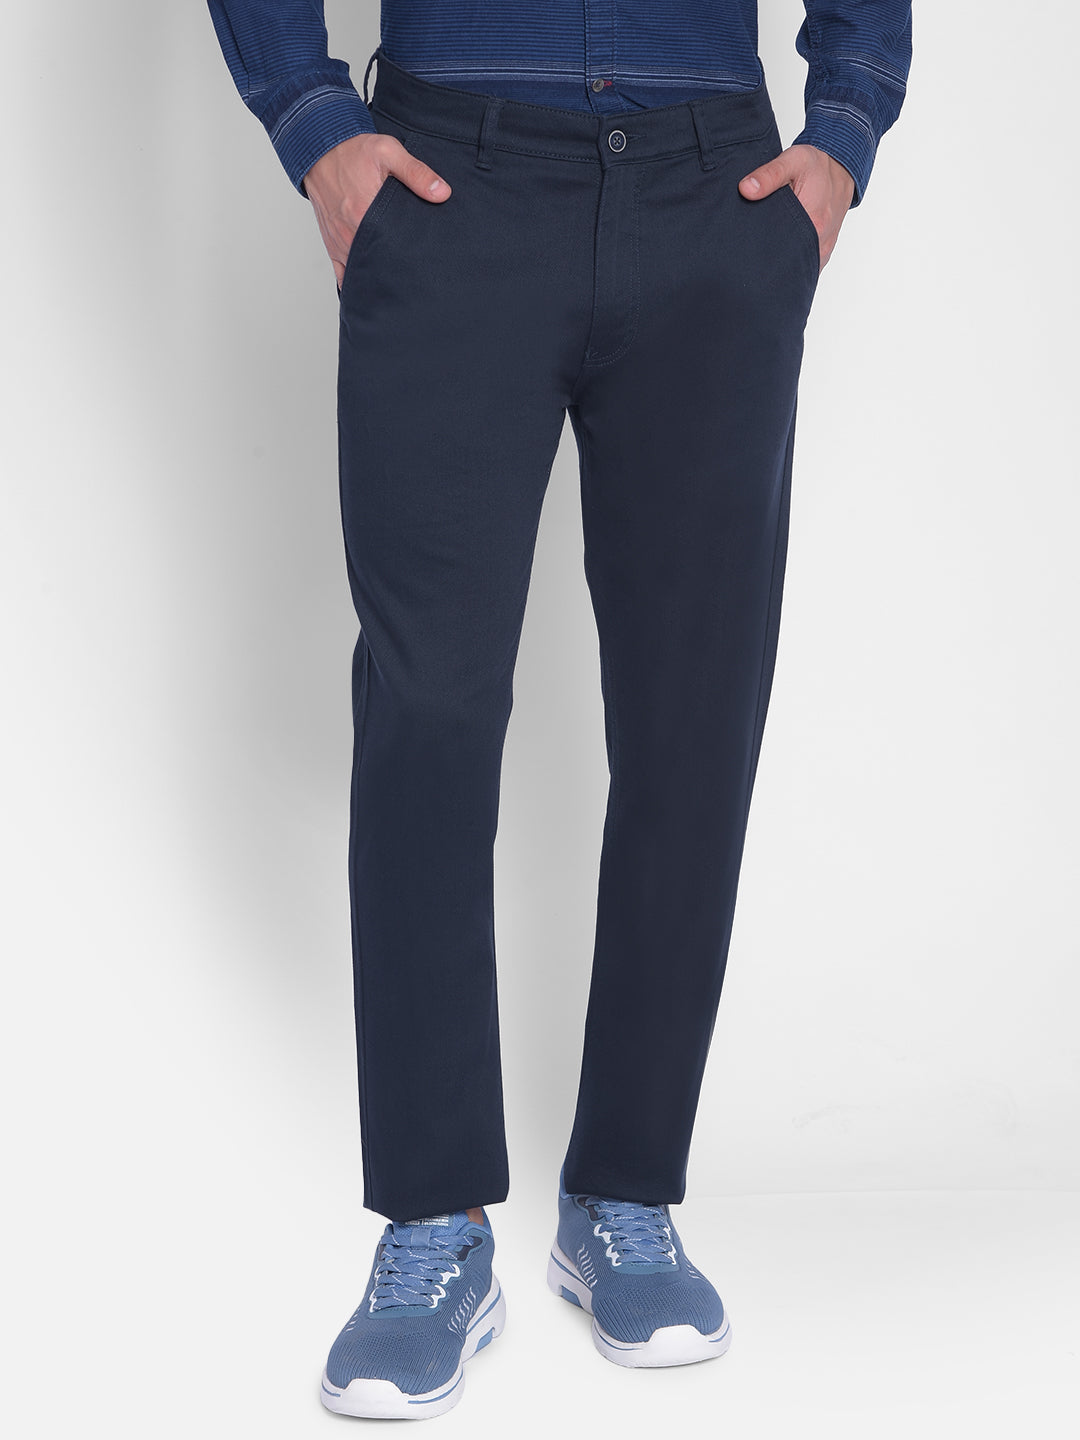 Navy Blue Trouser-Men Jeans-Crimsoune Club